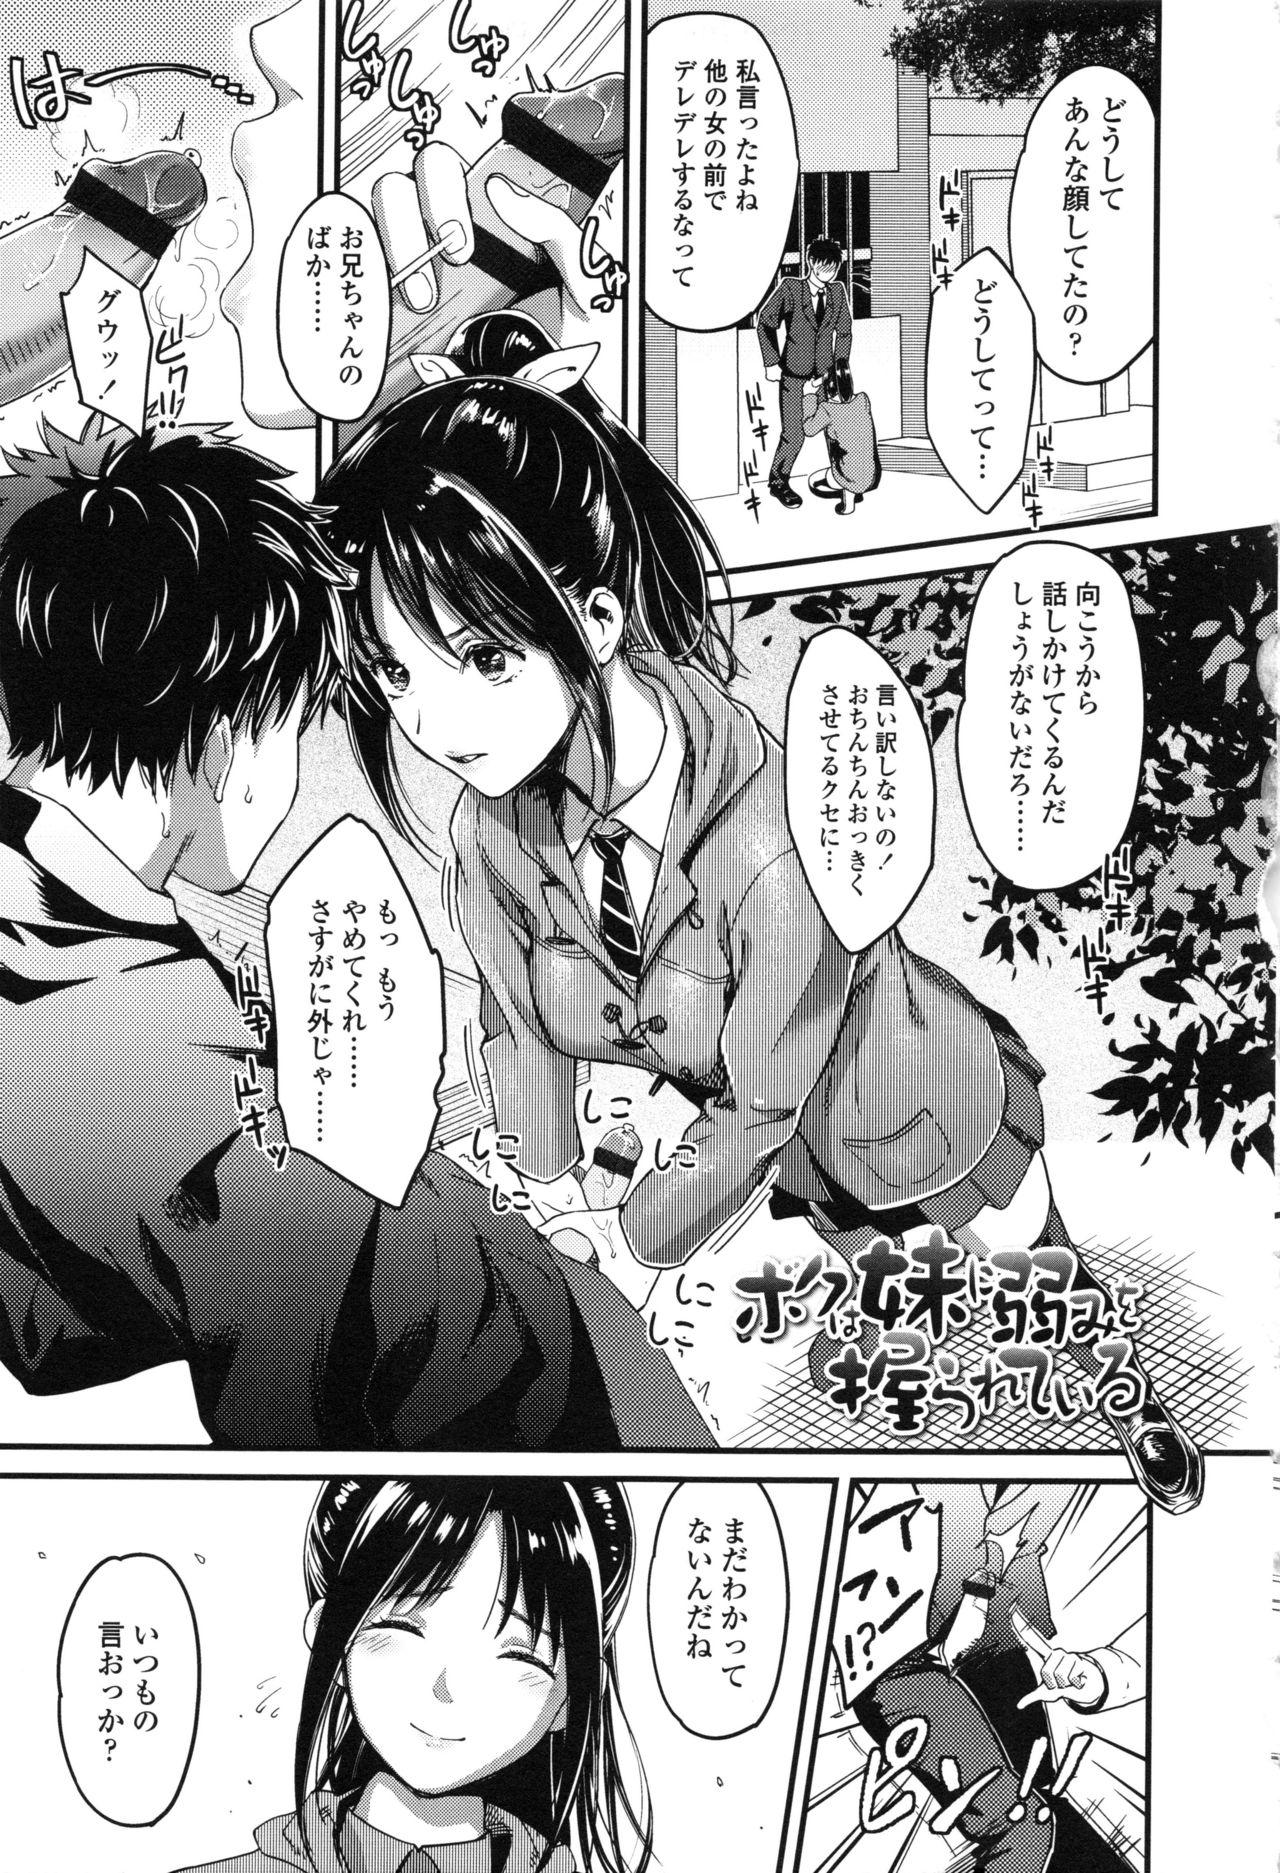 Seifuku no Mama Aishinasai! - Love in school uniform 24